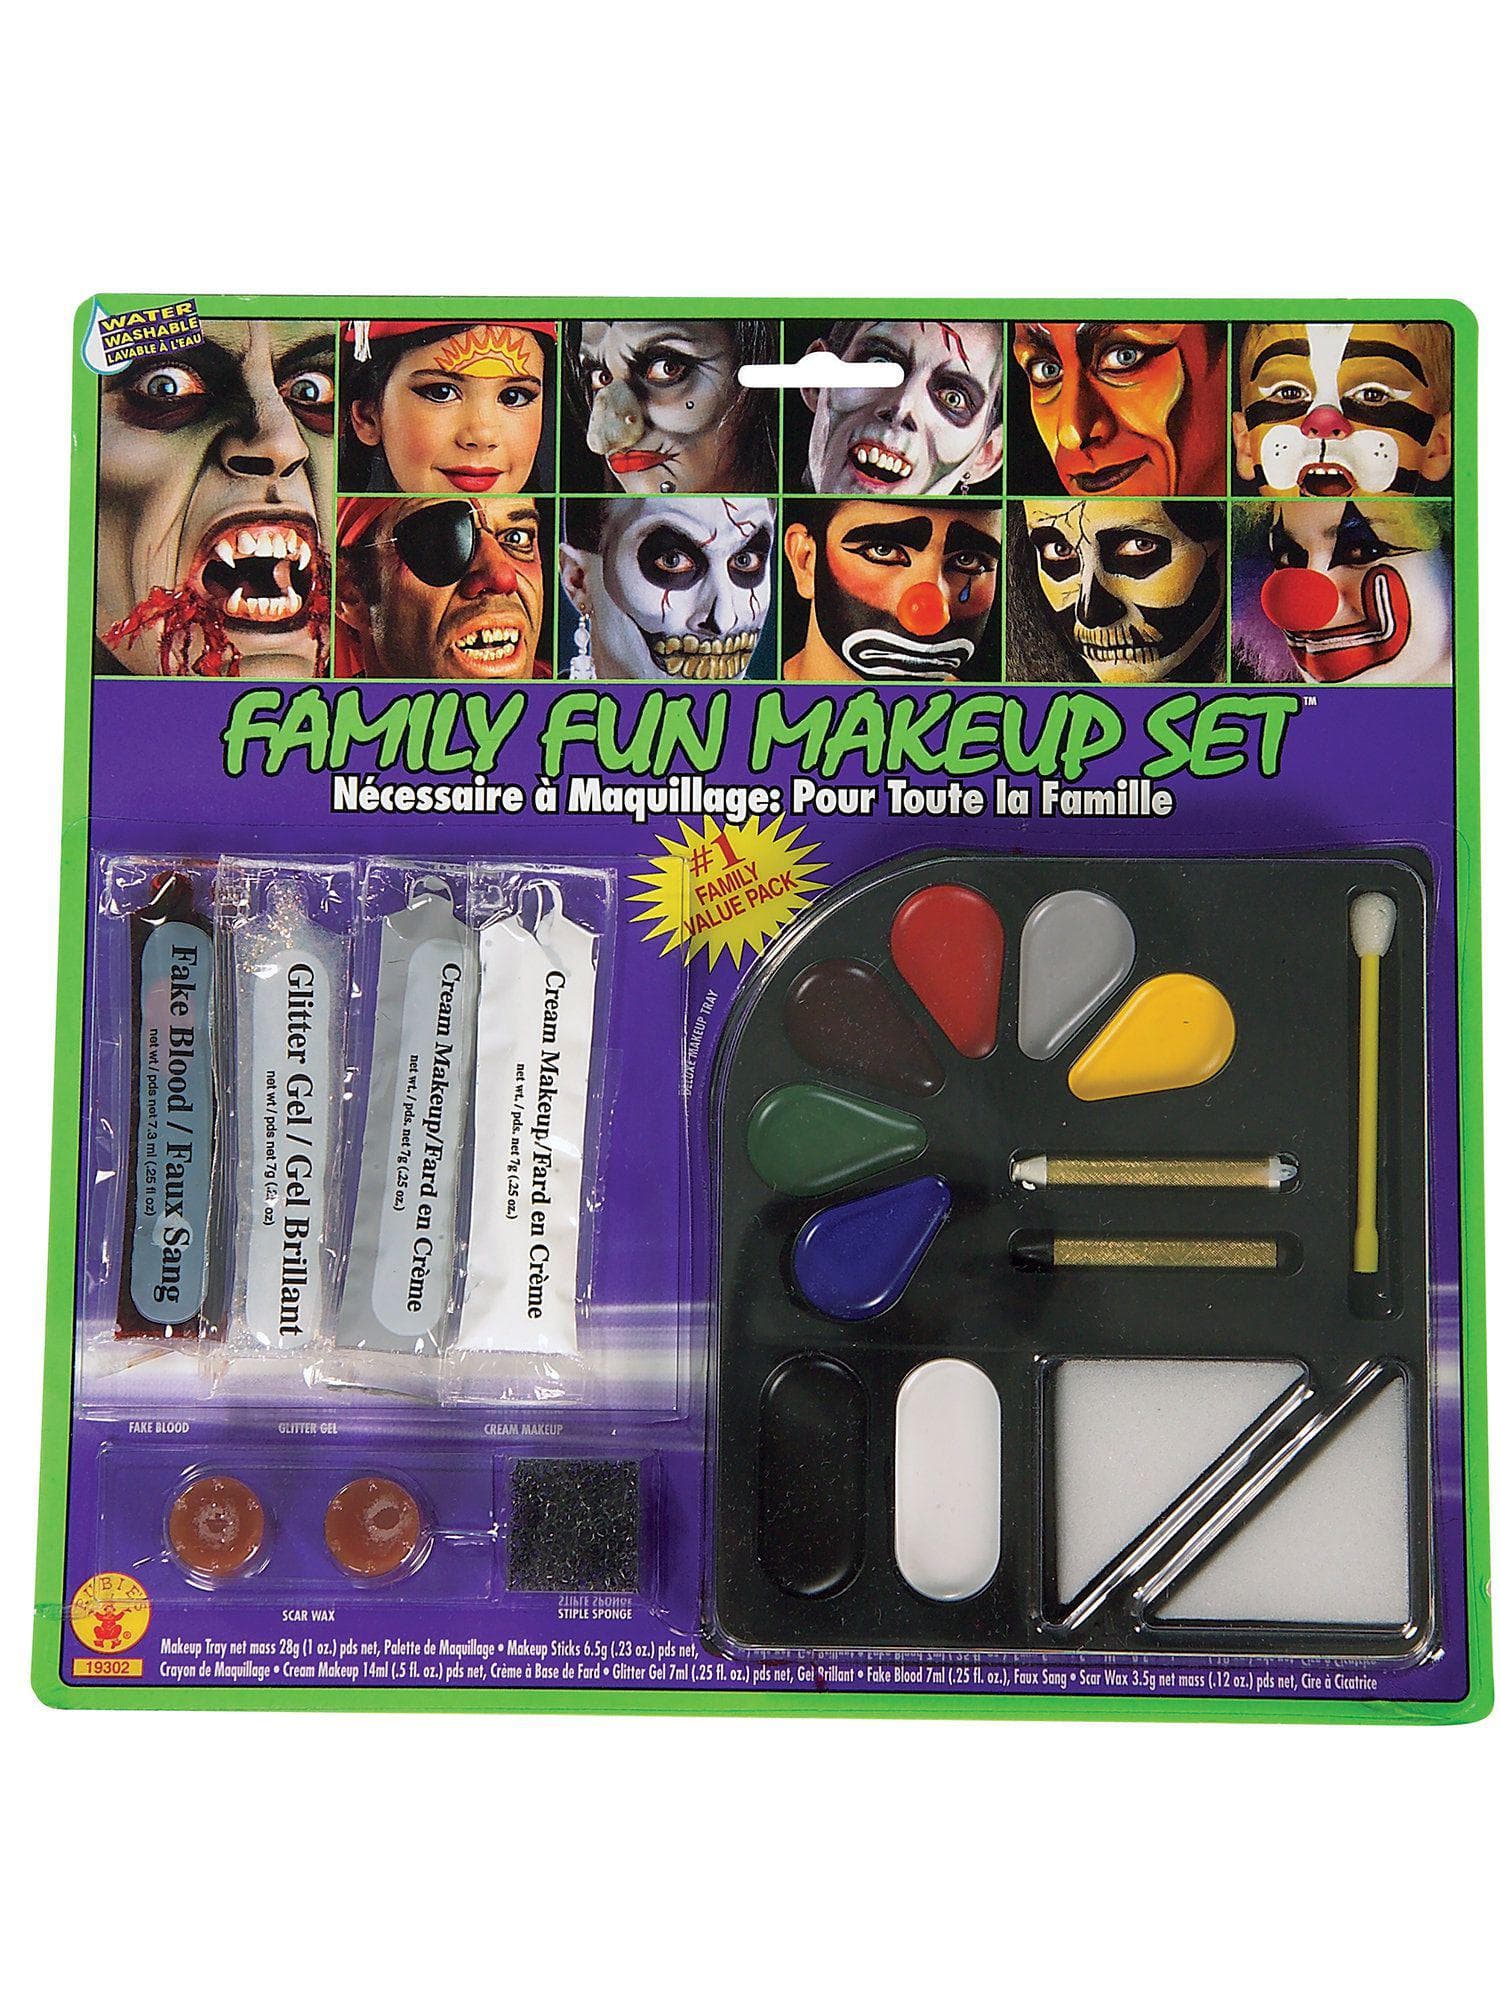 Family Fun Makeup Set - costumes.com